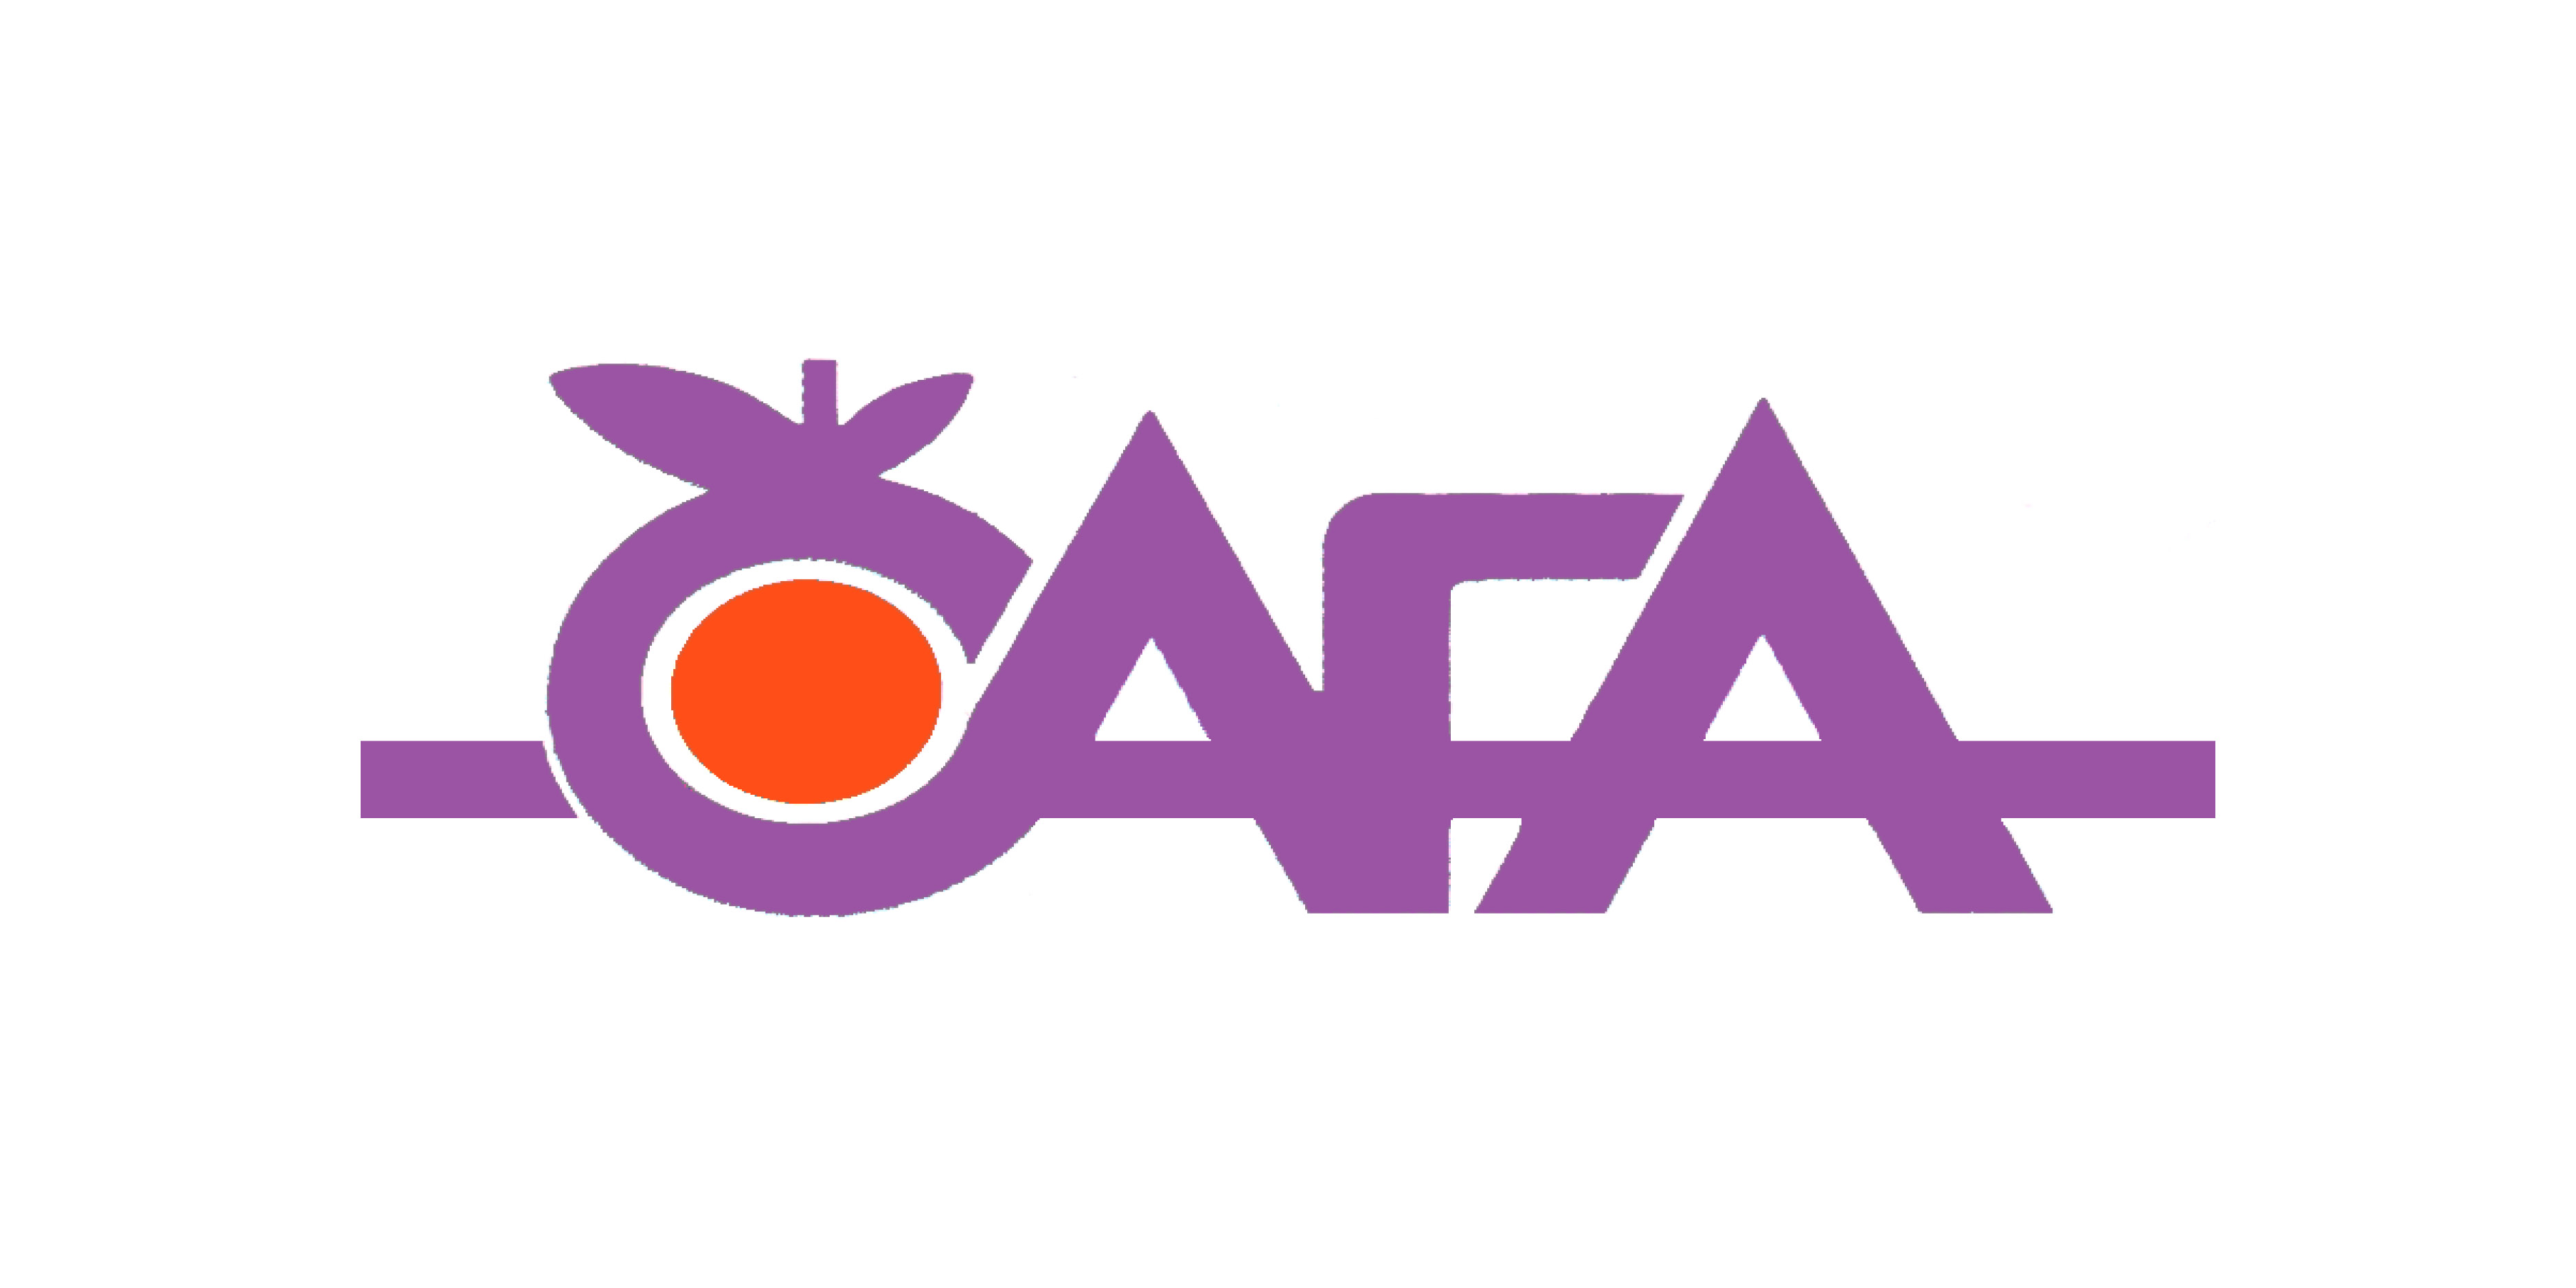 CAFA Meran Landwirtschaftliche Gesellschaft | Soc. Agricola Coop.